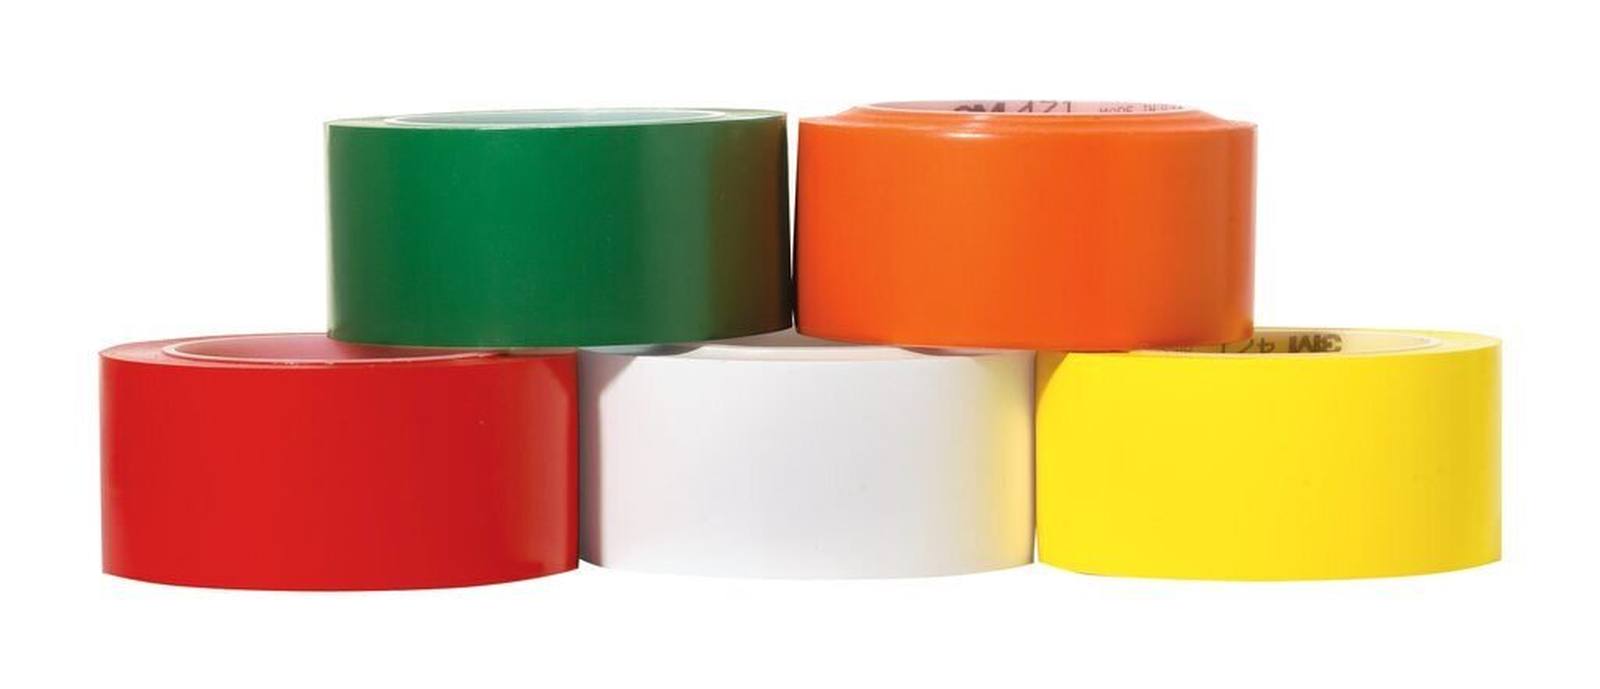 3M ruban adhésif en PVC souple 471 F, jaune, 50 mm x 33 m, 0,13 mm, emballage individuel pratique